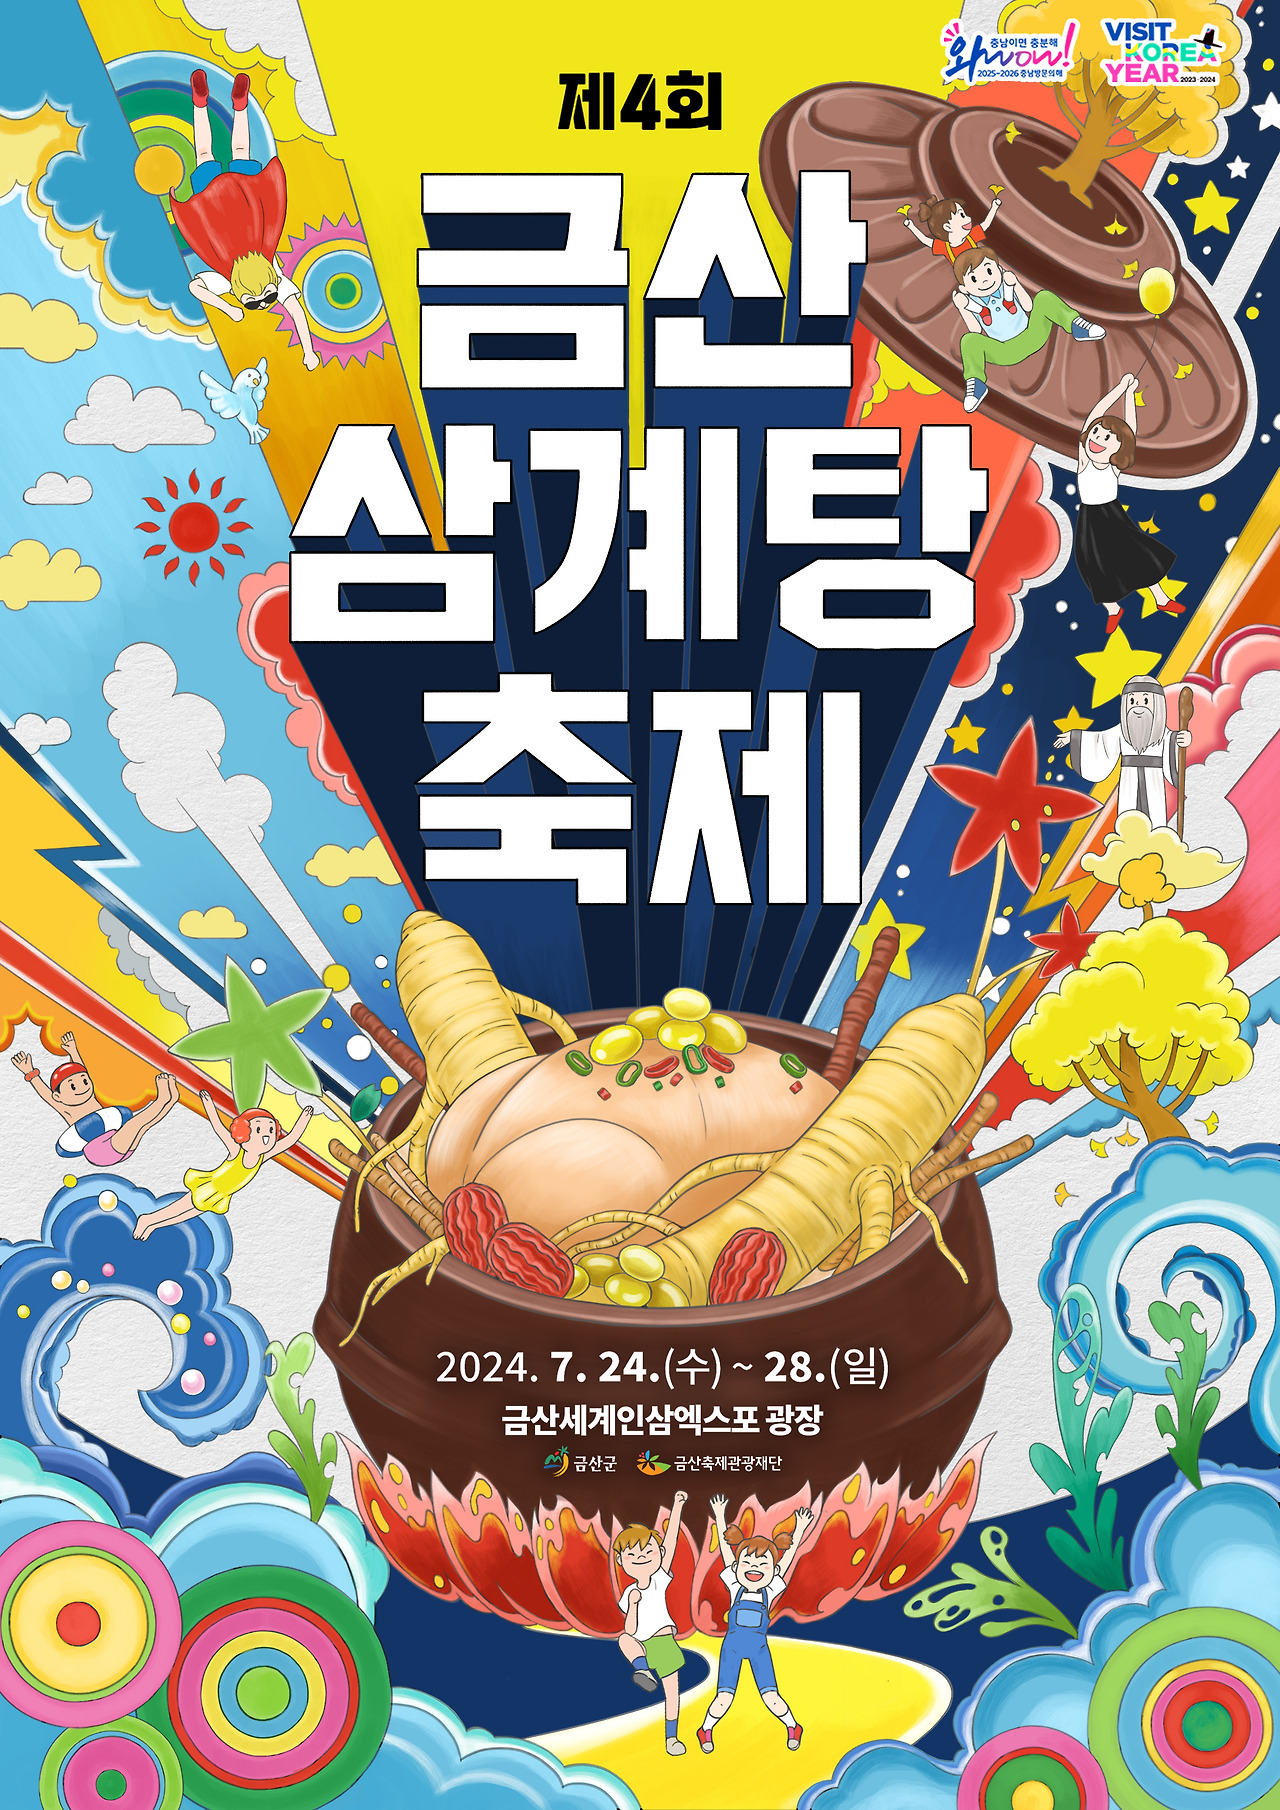 제 4회 금산 삼계탕 축제 기본일정과 특징 소개